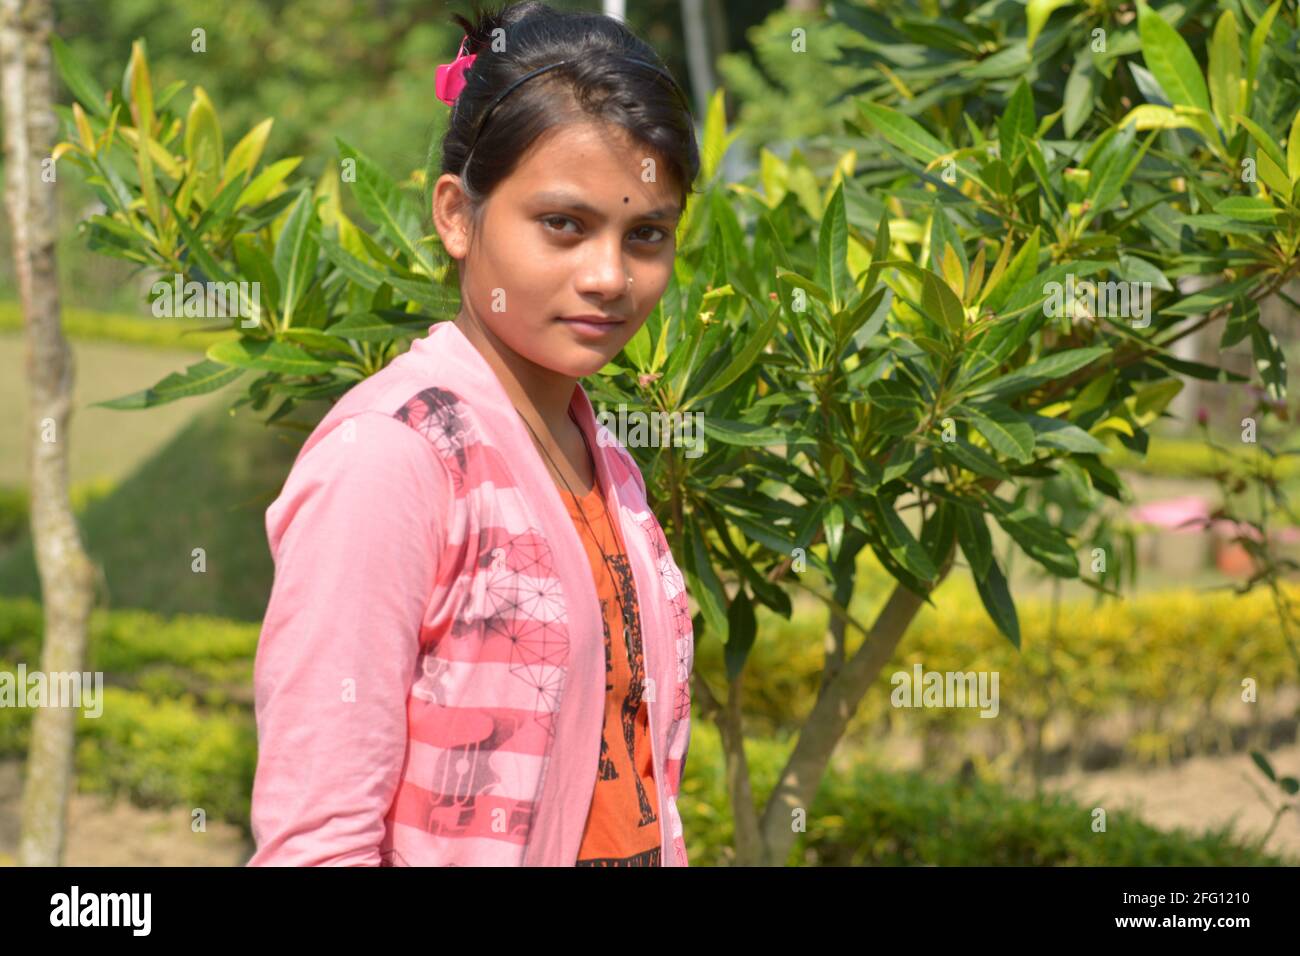 Adolescente indienne bengali portant des jeans mains sur la poche posant pour la photo dans un jardin, focalisation sélective Banque D'Images